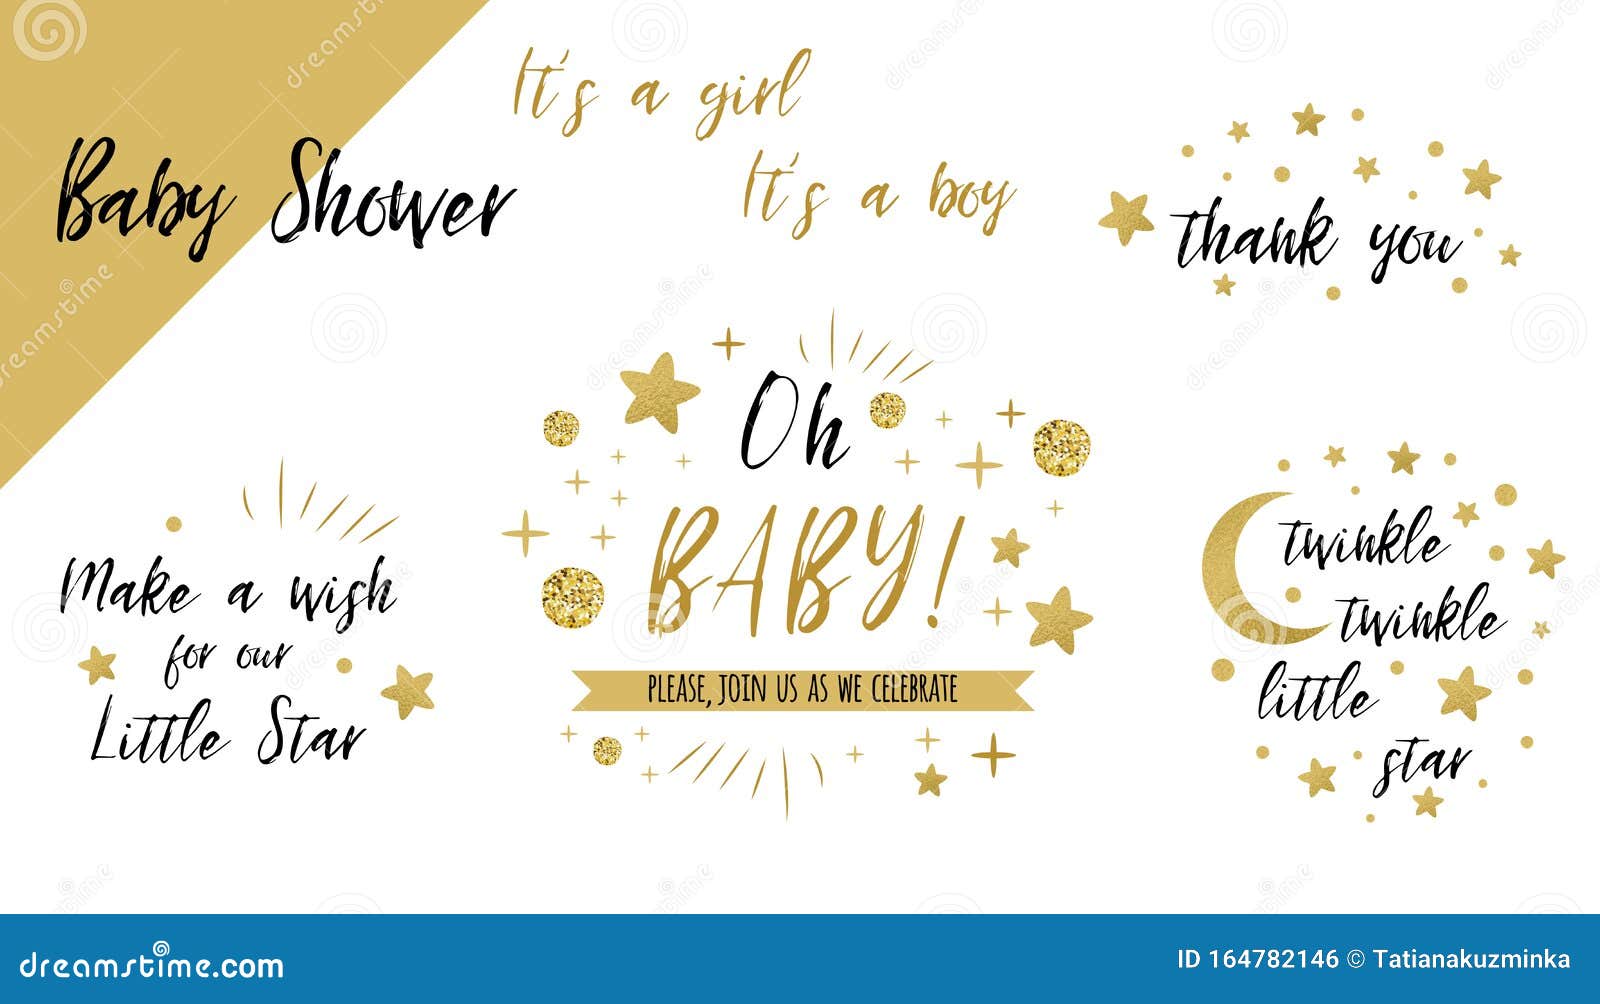 Babyduschset Mit Goldschablonen Twinkle Tinkle Kleine Stern Text Oh Baby Glitter Stern Einladung Danke Karte Stock Abbildung Illustration Von Nsche Fahne